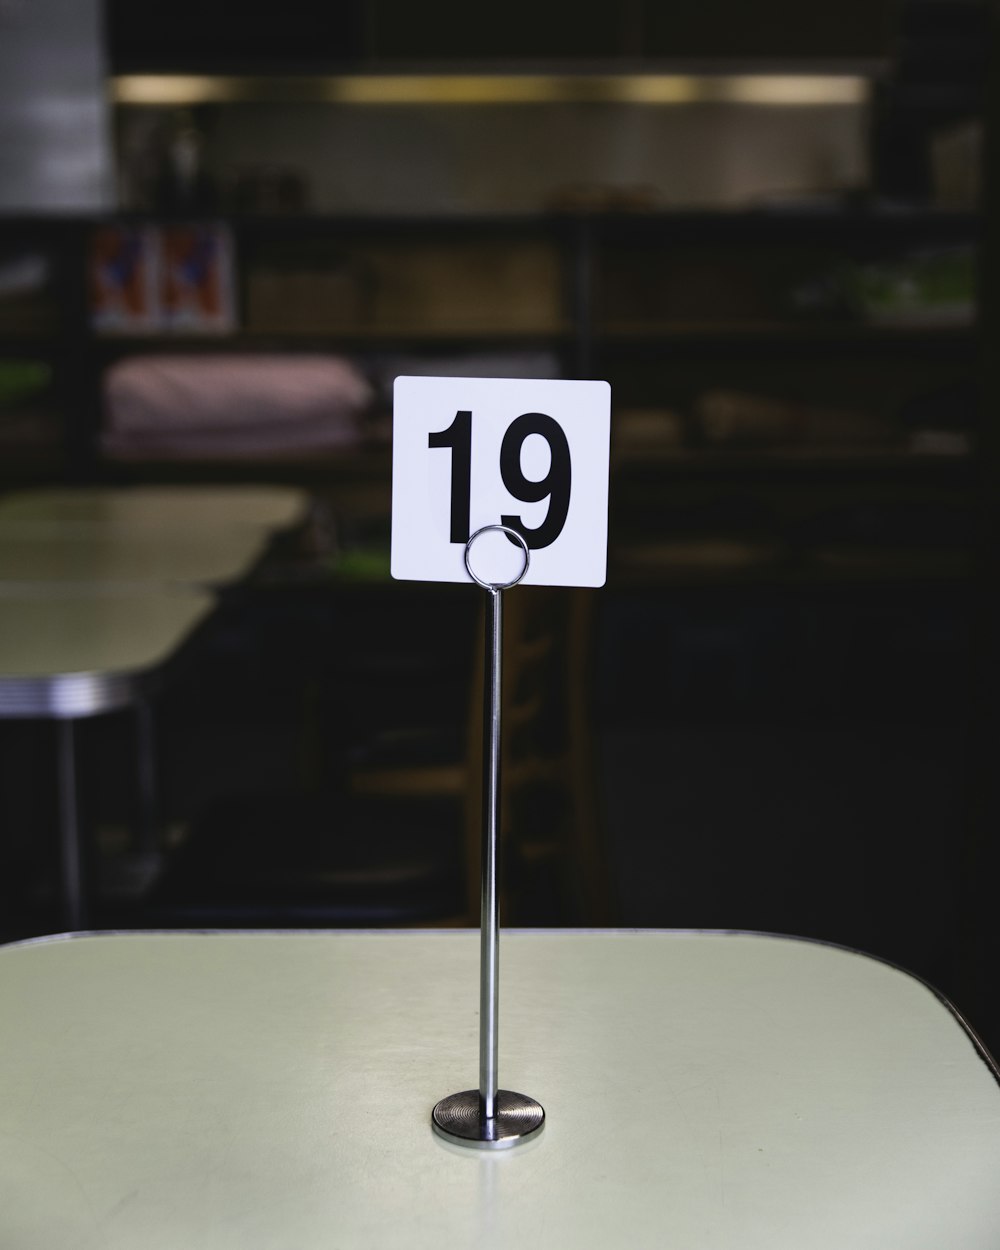 tavolo numero 19 sul tavolo all'interno della stanza